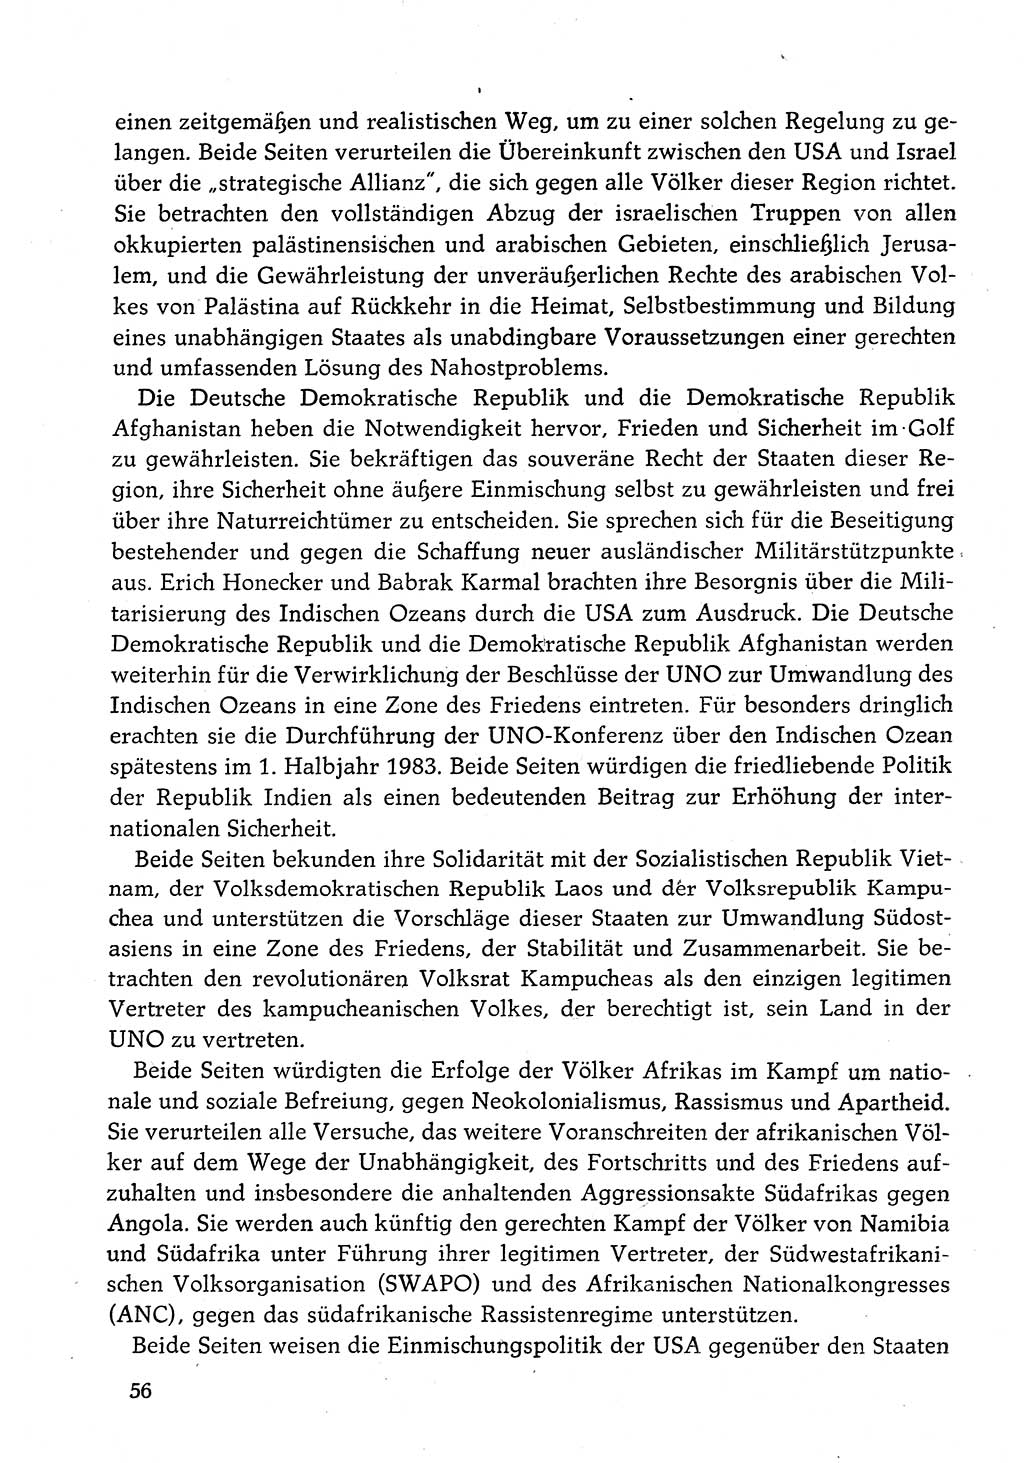 Dokumente der Sozialistischen Einheitspartei Deutschlands (SED) [Deutsche Demokratische Republik (DDR)] 1982-1983, Seite 56 (Dok. SED DDR 1982-1983, S. 56)